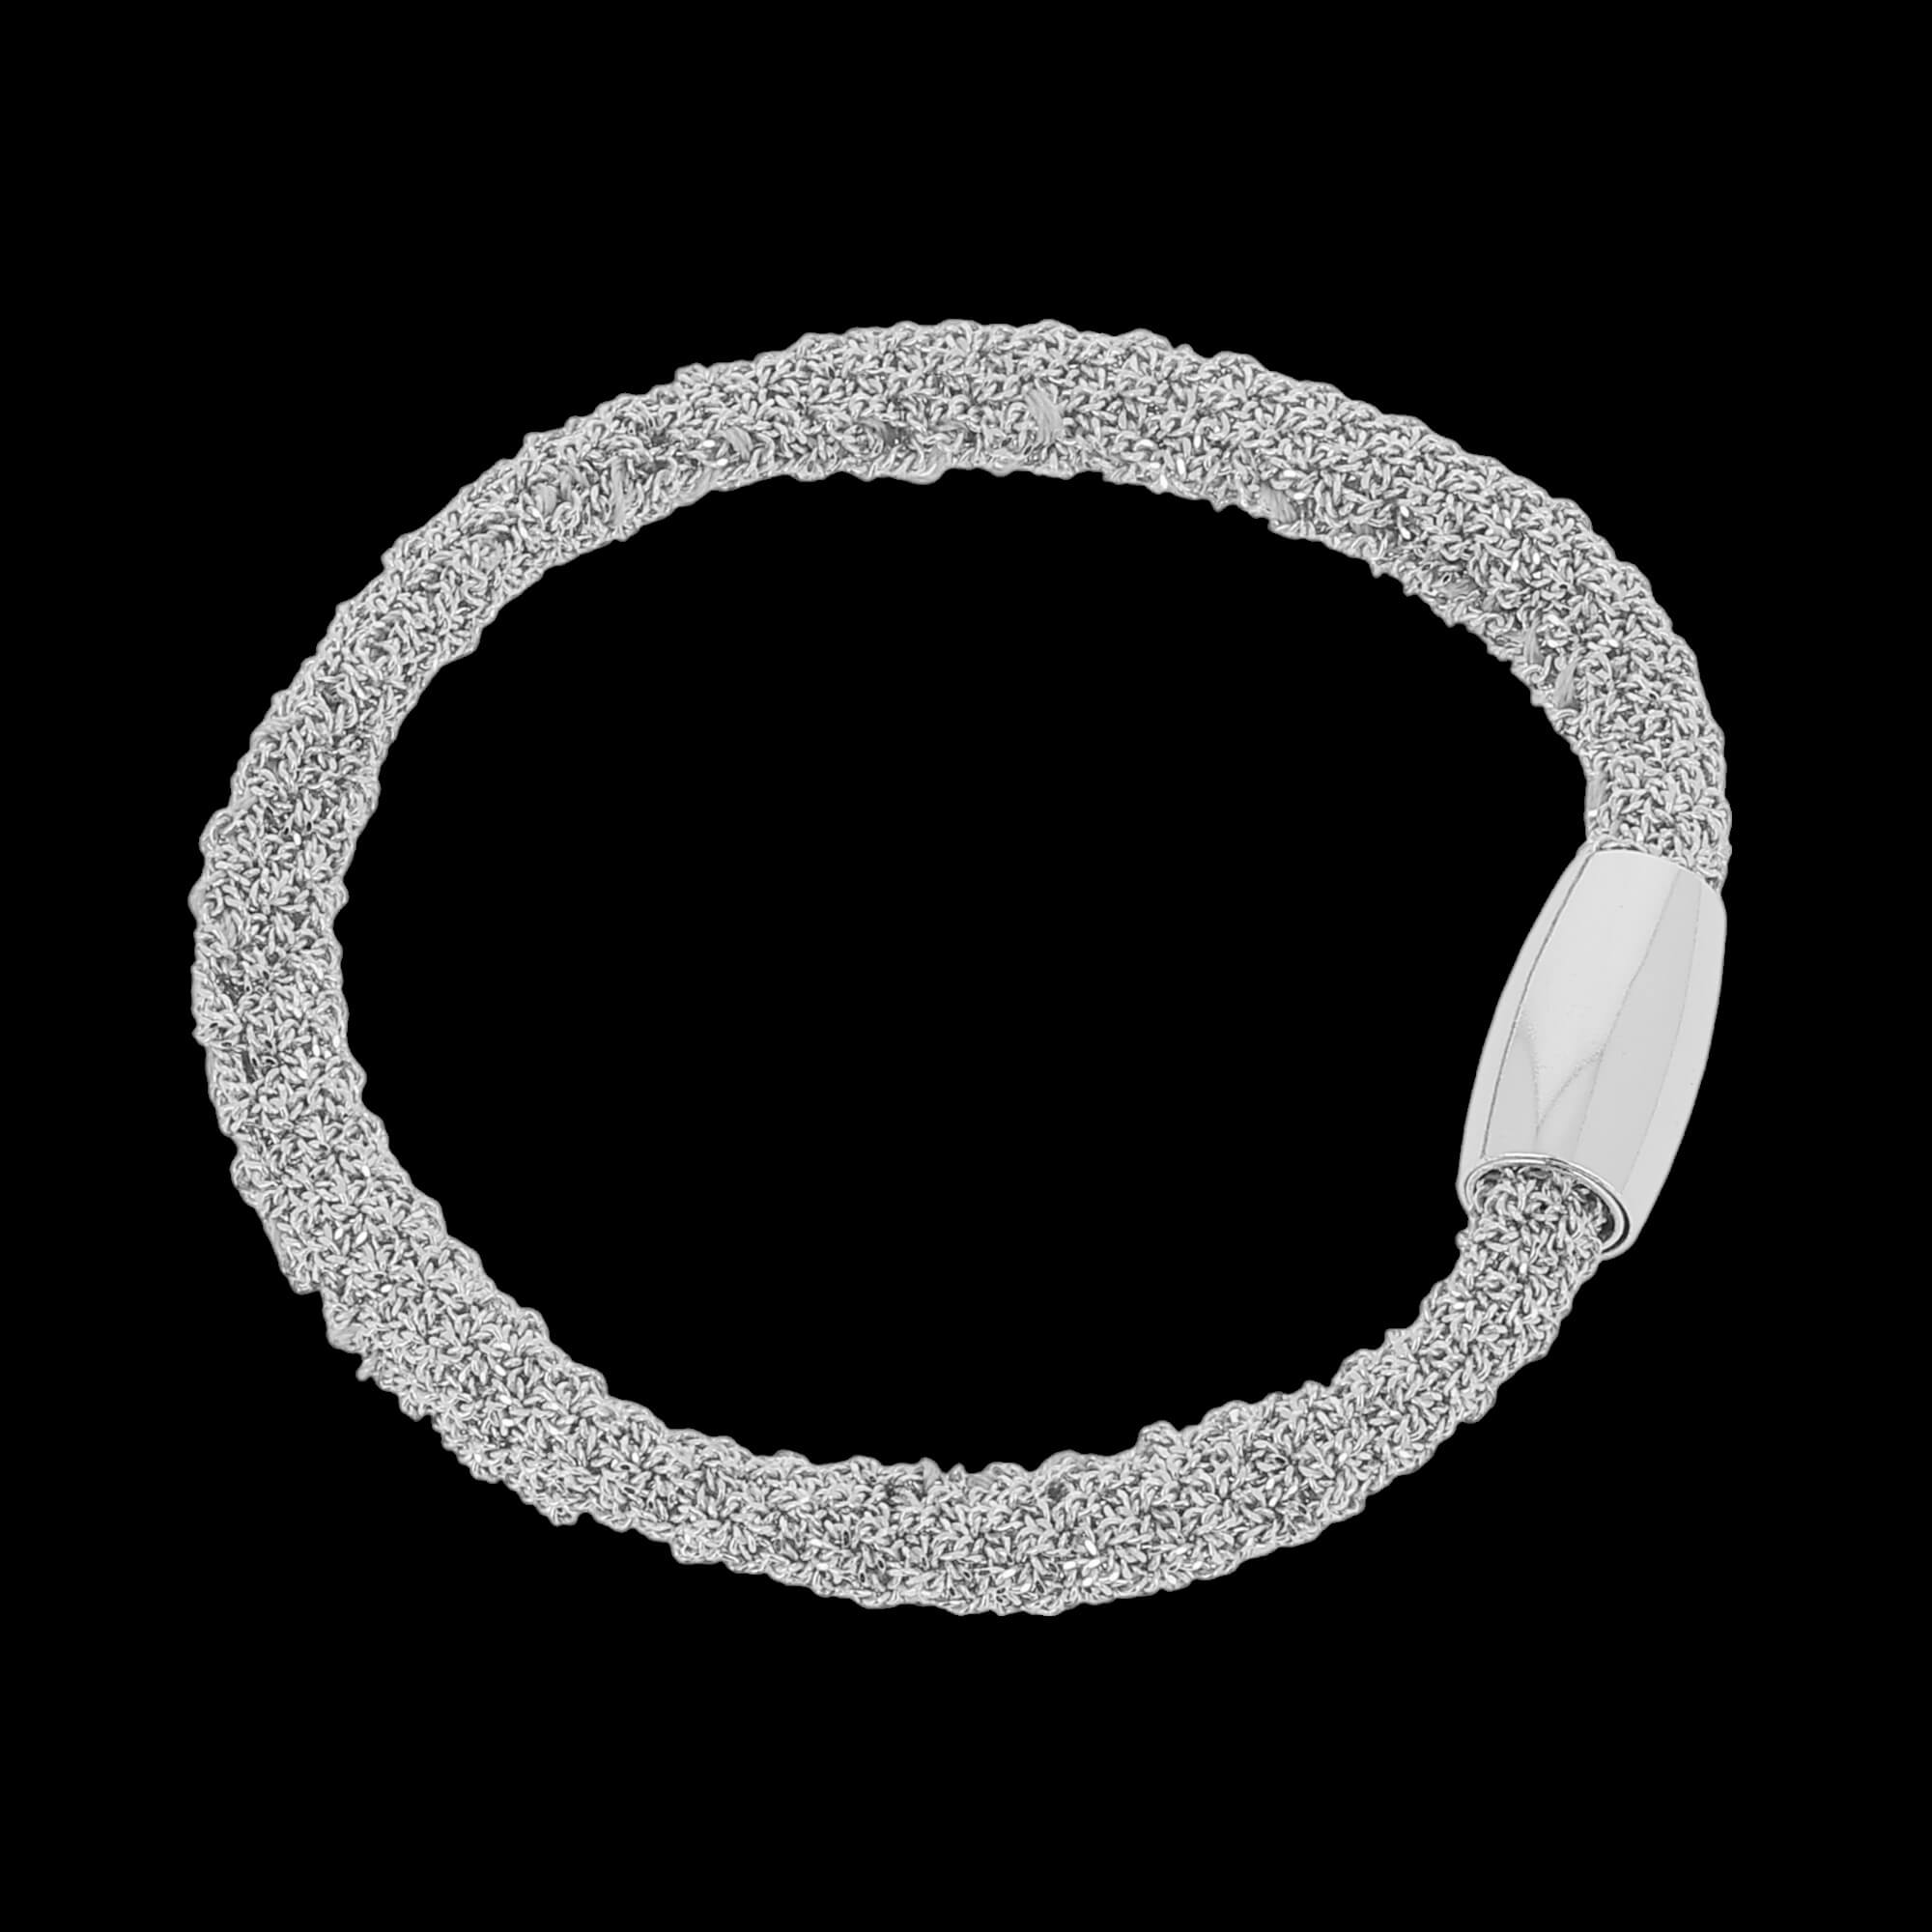 Narrow silver interwoven bracelet/ heavier